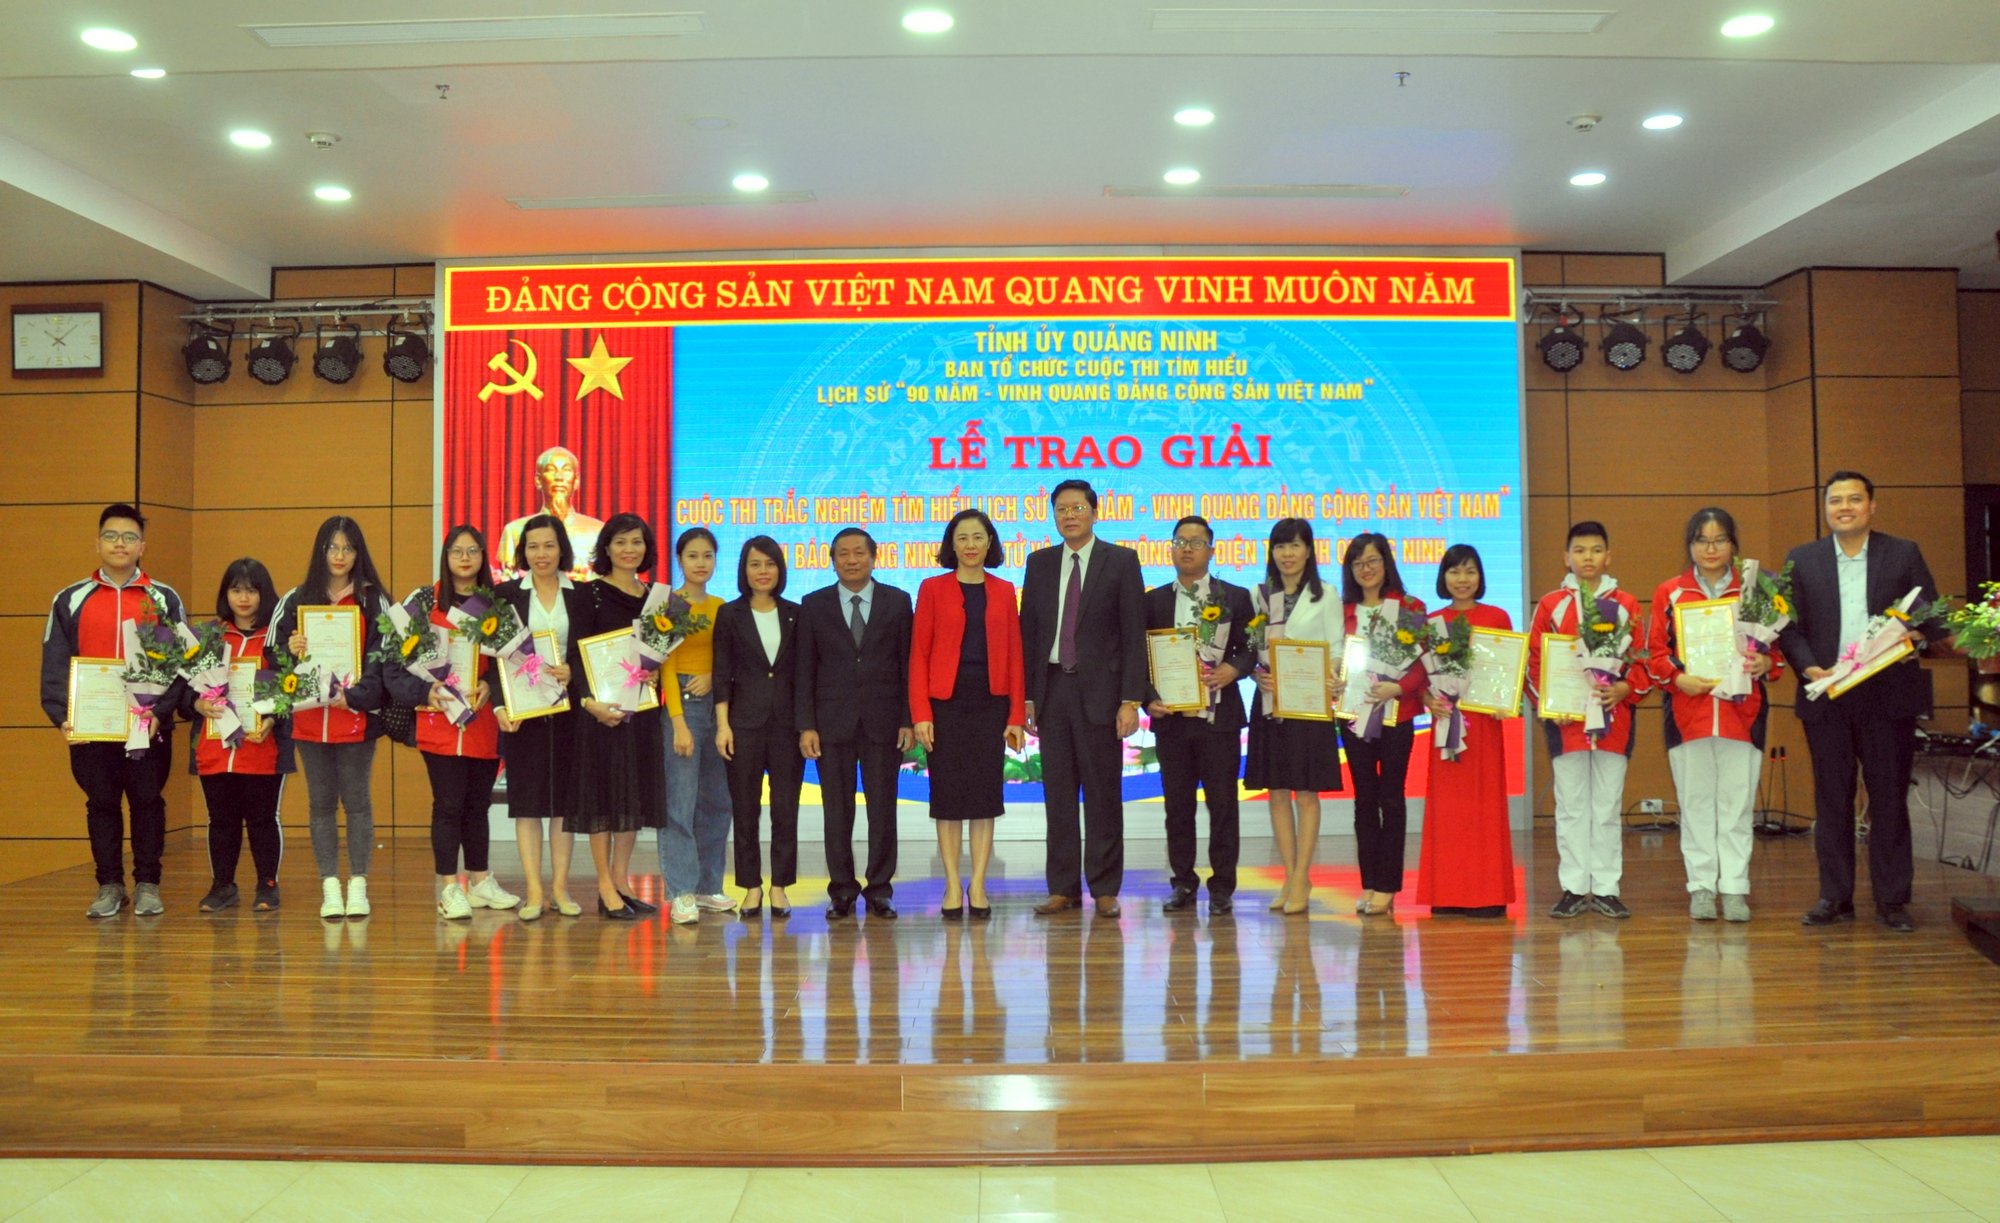 Trao giải đợt 2 Cuộc thi trắc nghiệm tìm hiểu lịch sử "90 năm - Vinh quang Đảng Cộng sản Việt Nam"